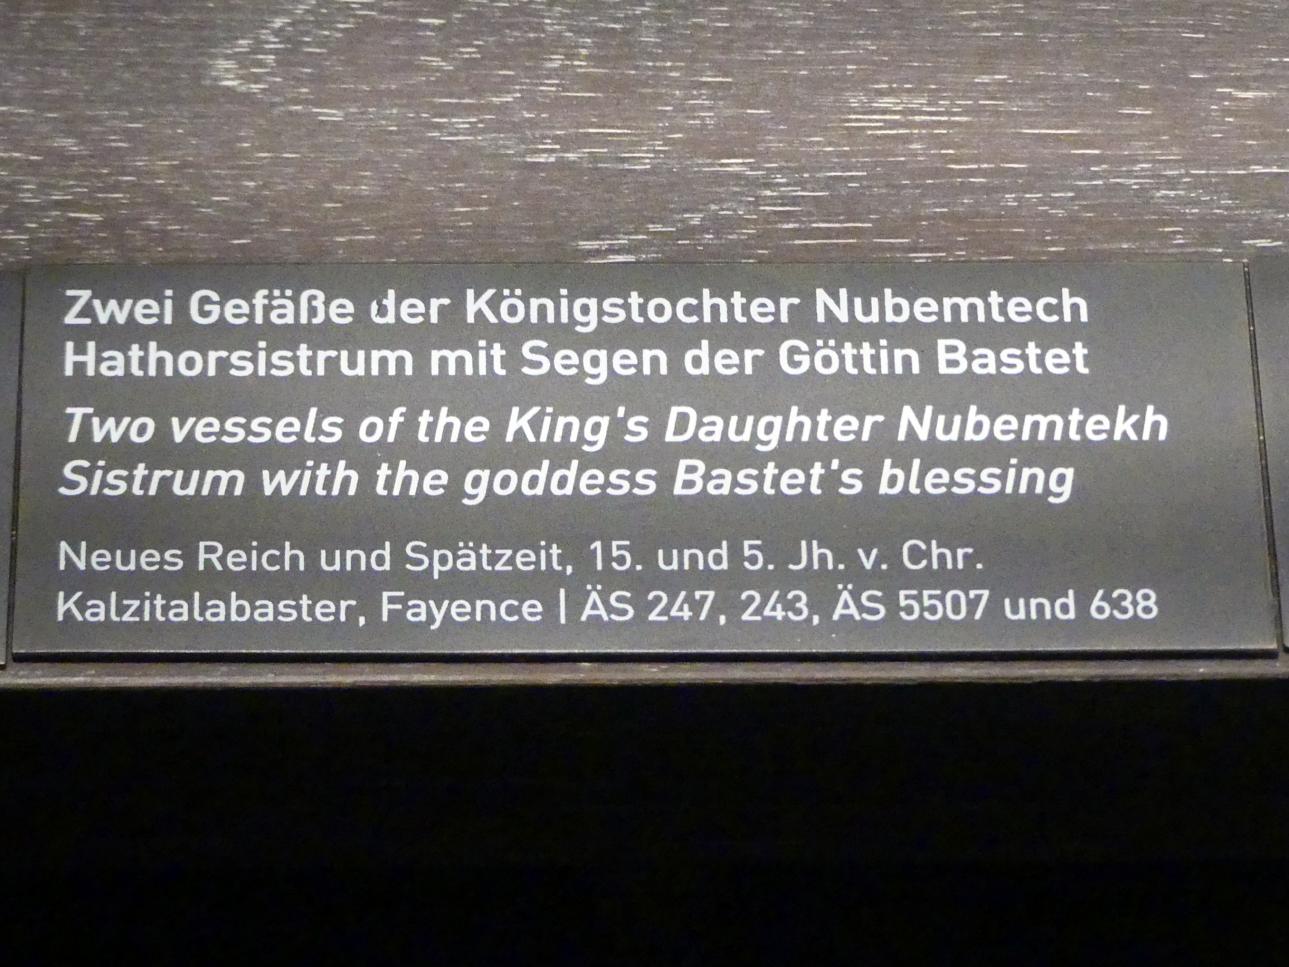 Zwei Gefäße der Königstochter Nubemtech, Neues Reich, 953 - 887 v. Chr., 1500 - 1400 v. Chr., Bild 2/2